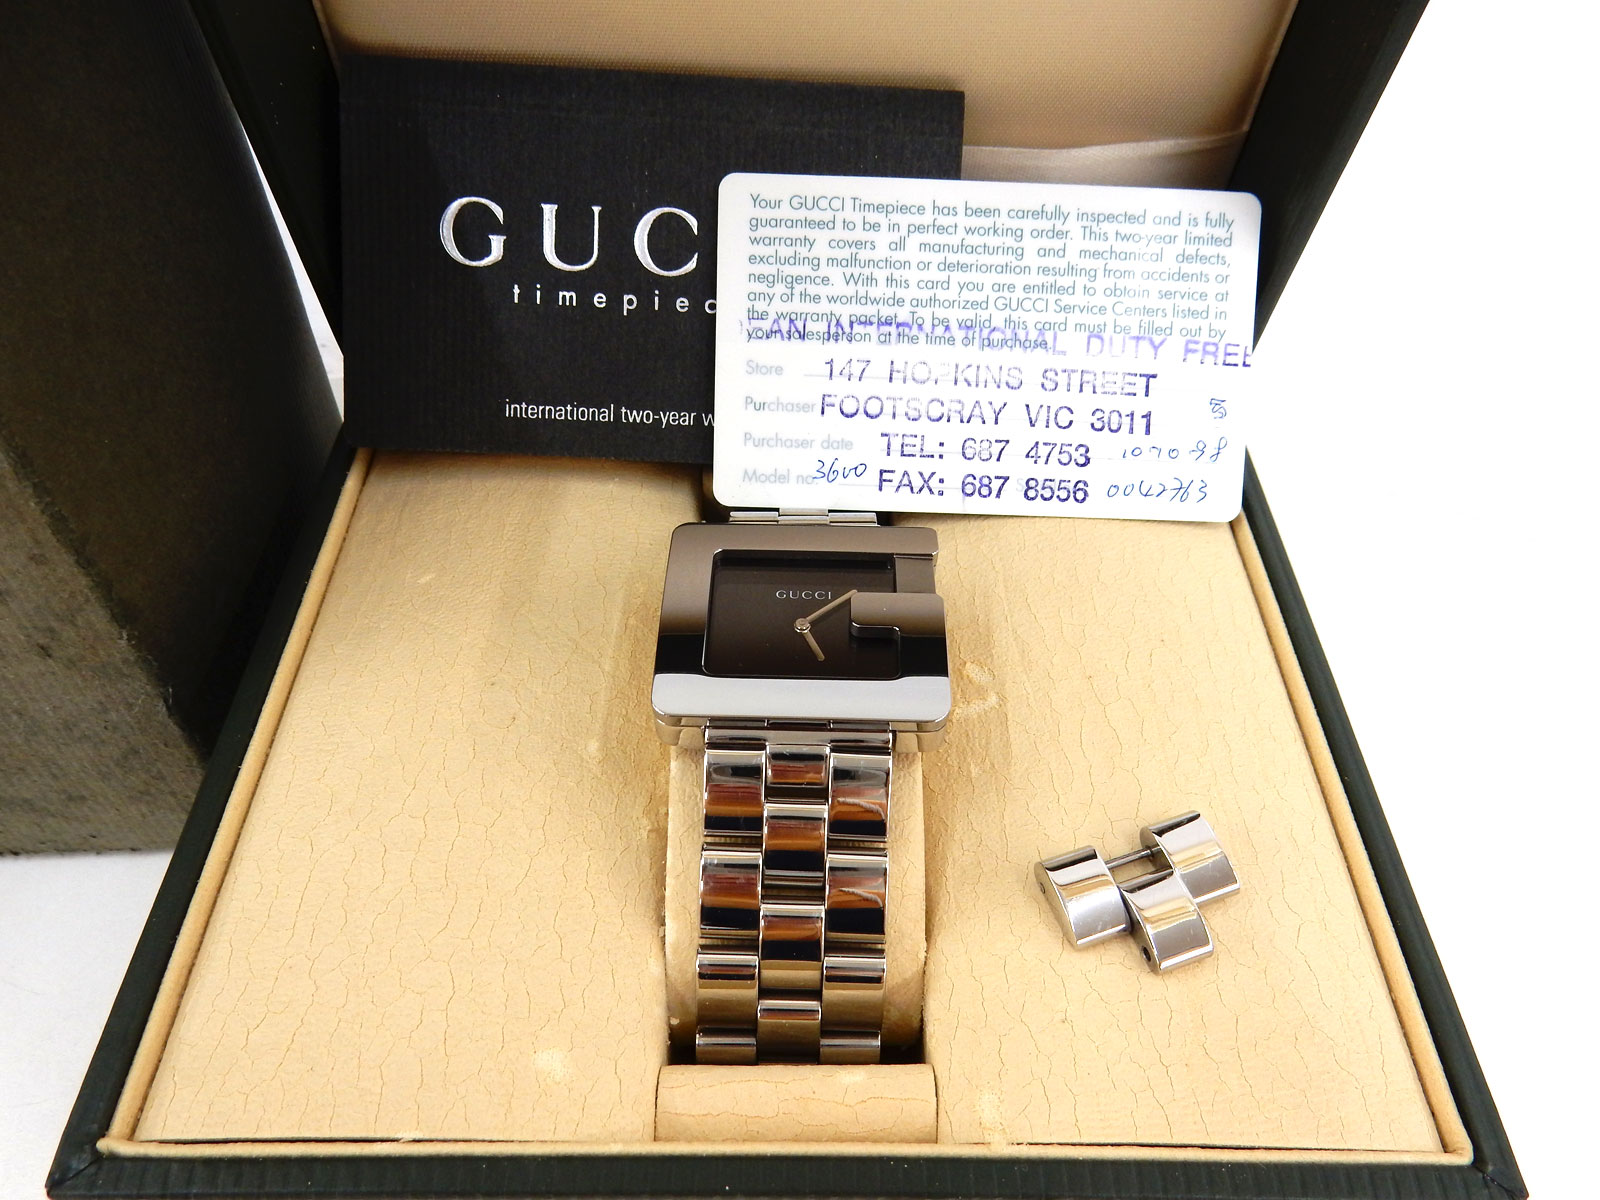 GUCCI グッチ メンズ腕時計 モデル3600M クオーツ 黒文字盤 買取 茨城 ニコニコ堂下妻店 | 中古品の高価買取・販売のアイコー